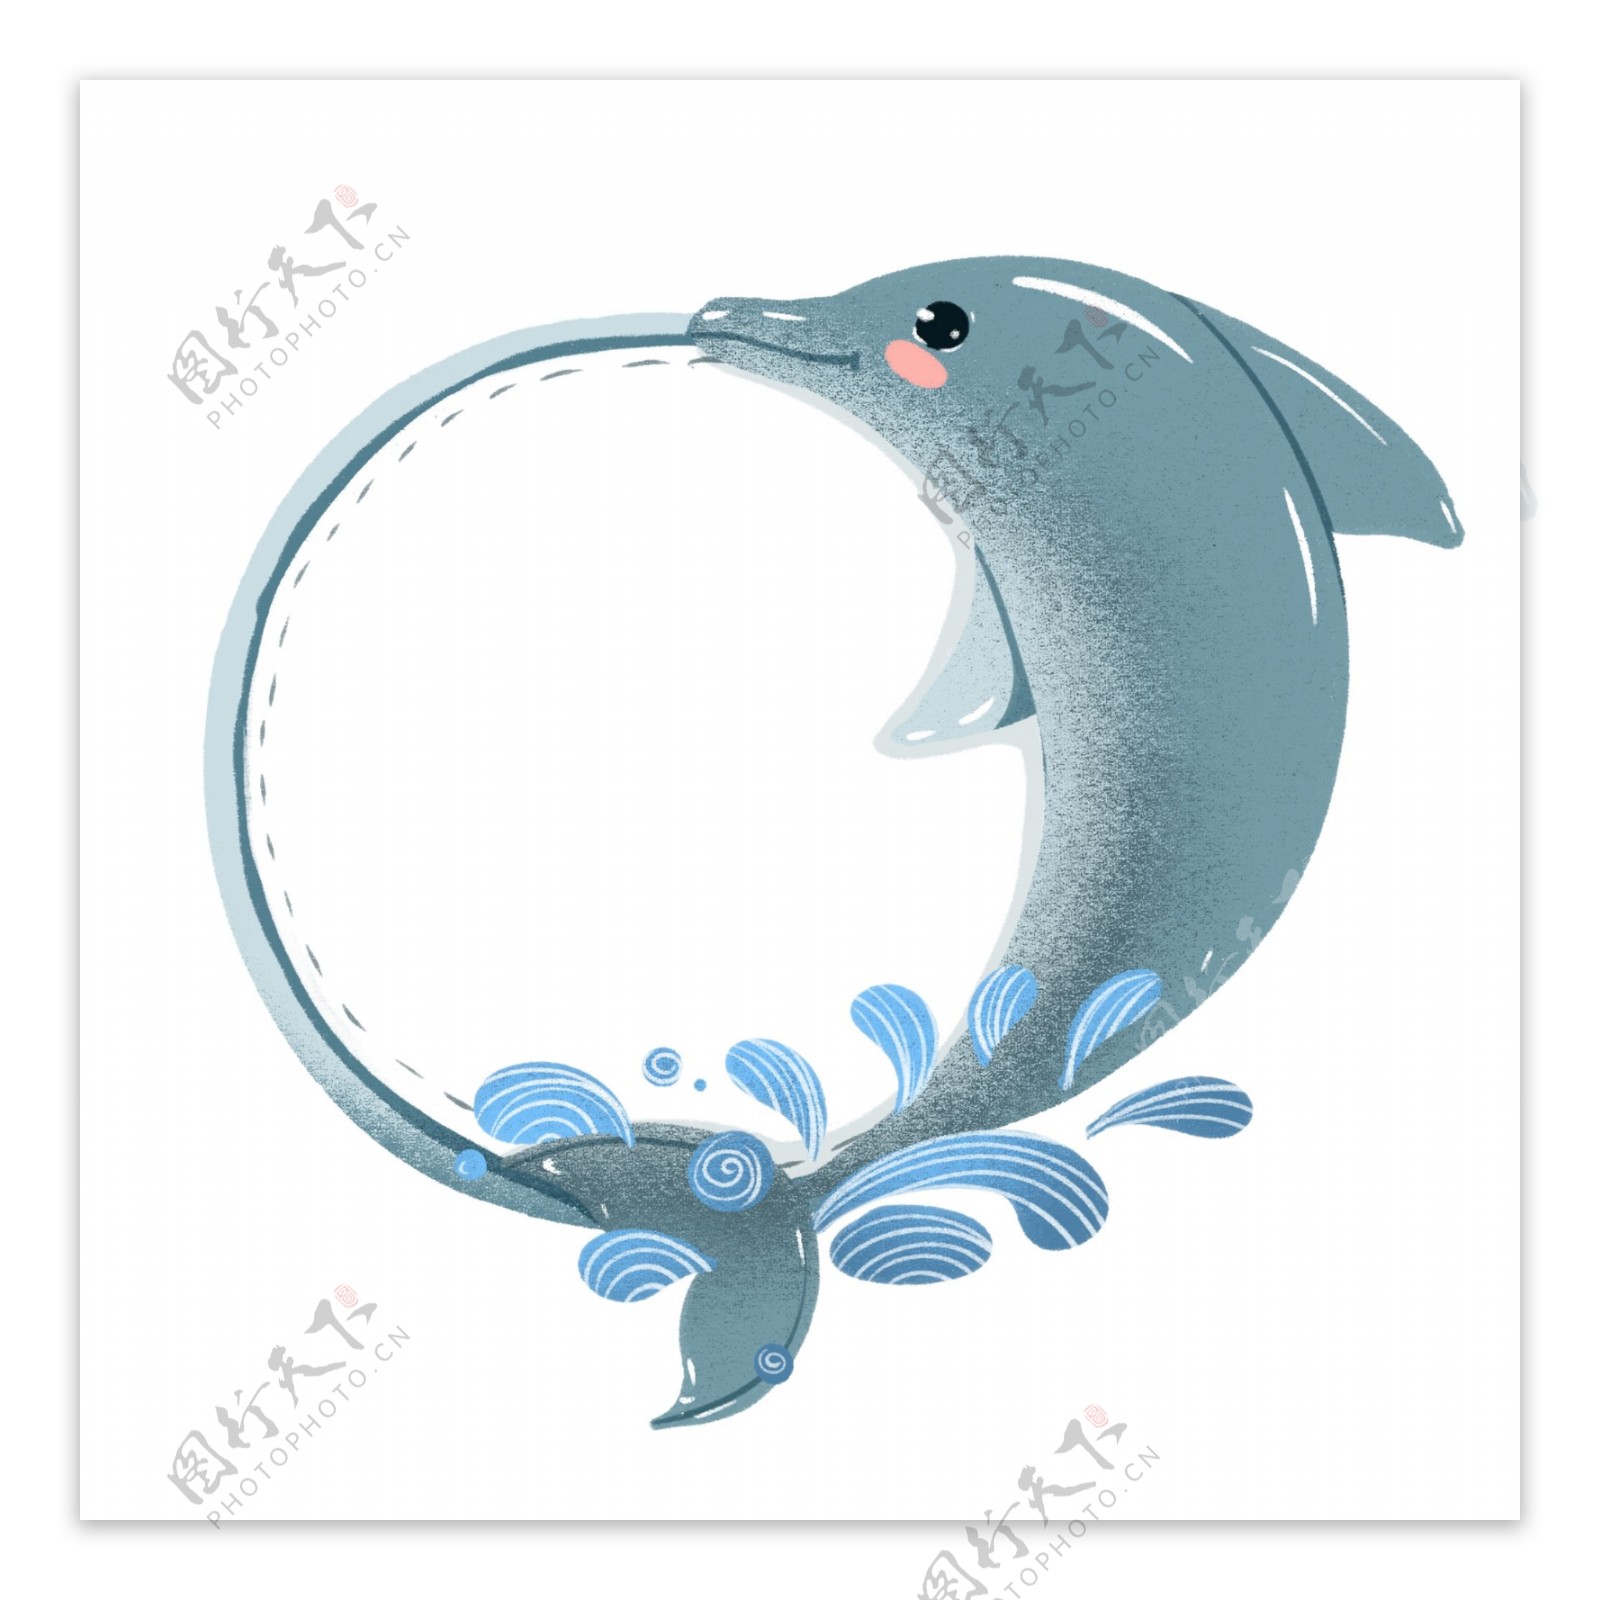 珍惜动物卡通边框海豚